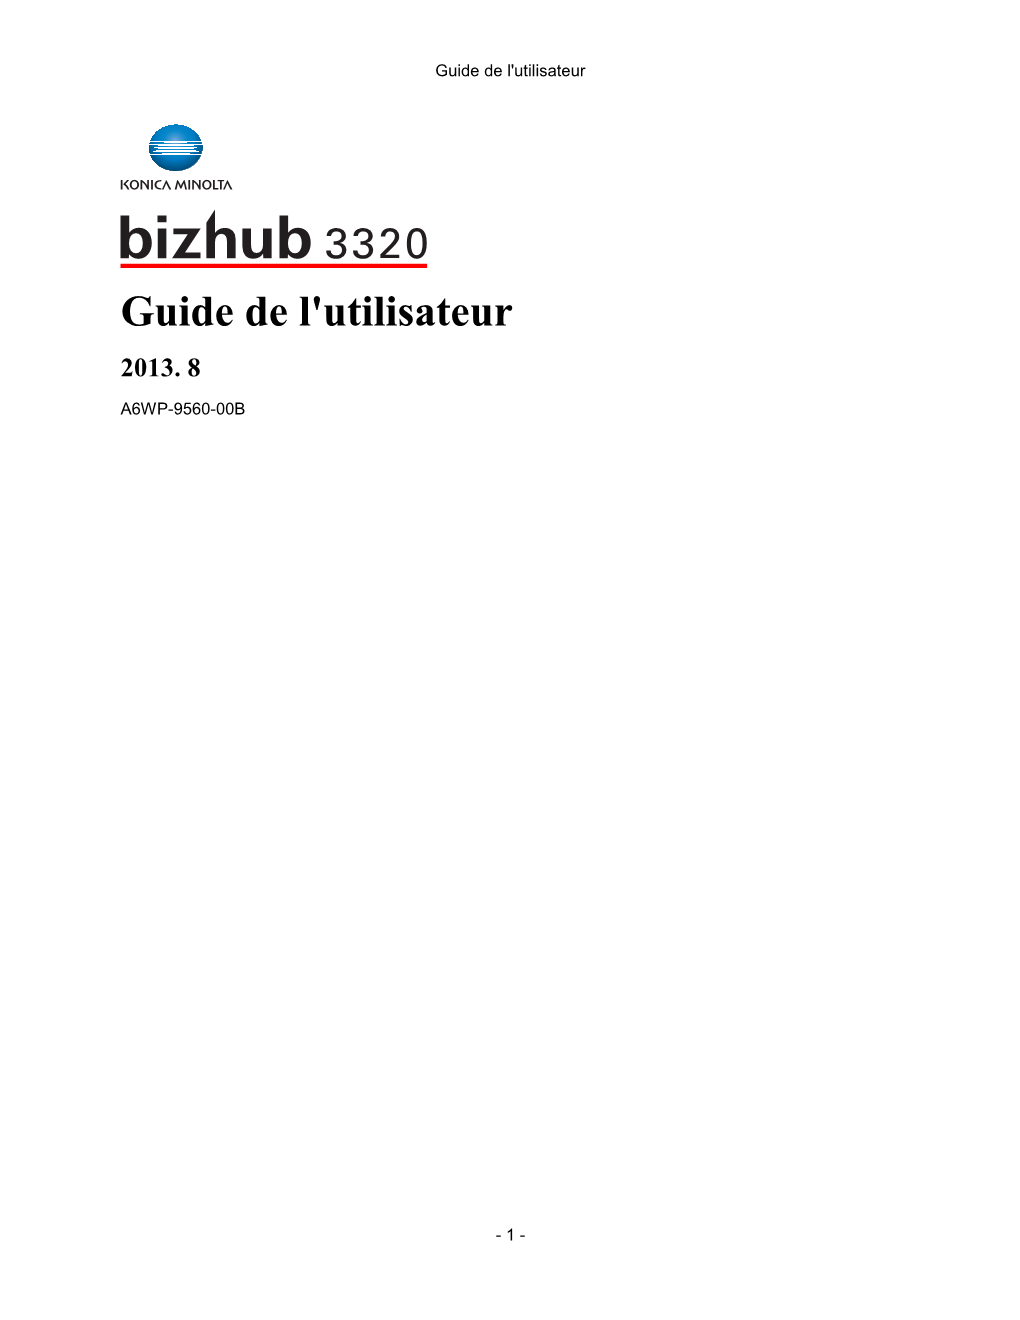 Guide De L'utilisateur